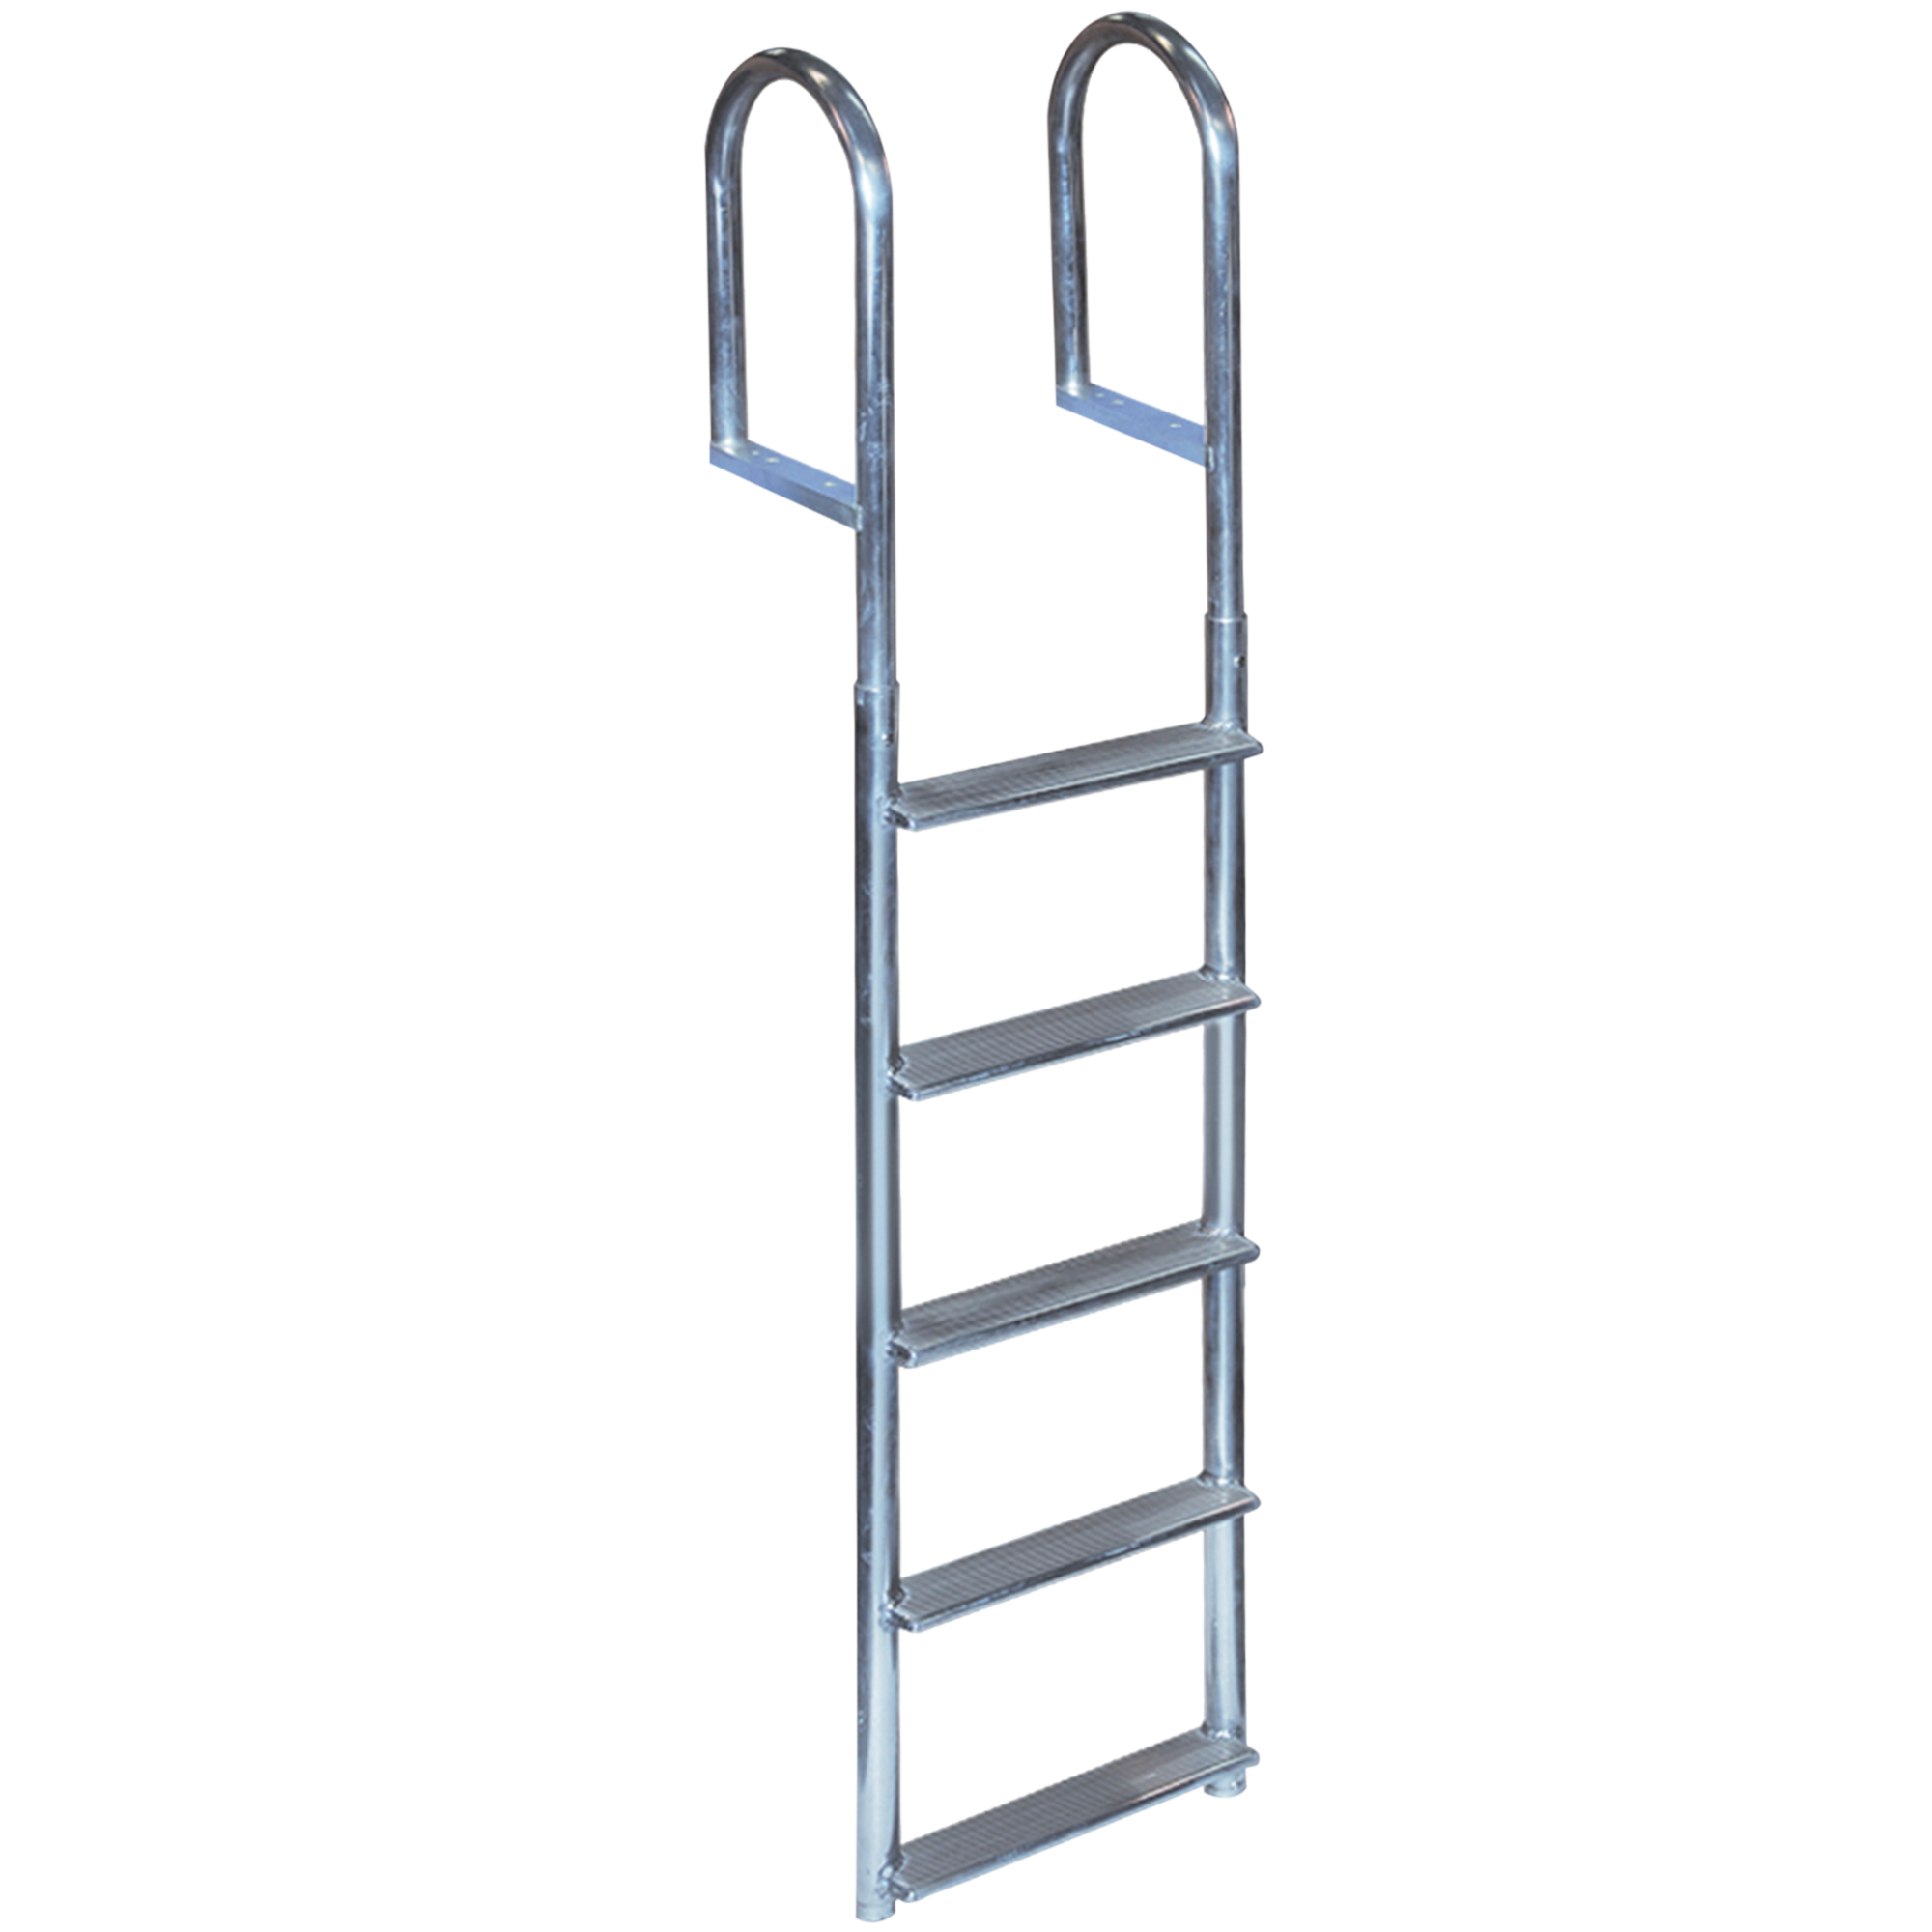 5 Rung Aluminum Ladder - 4" Wide Step